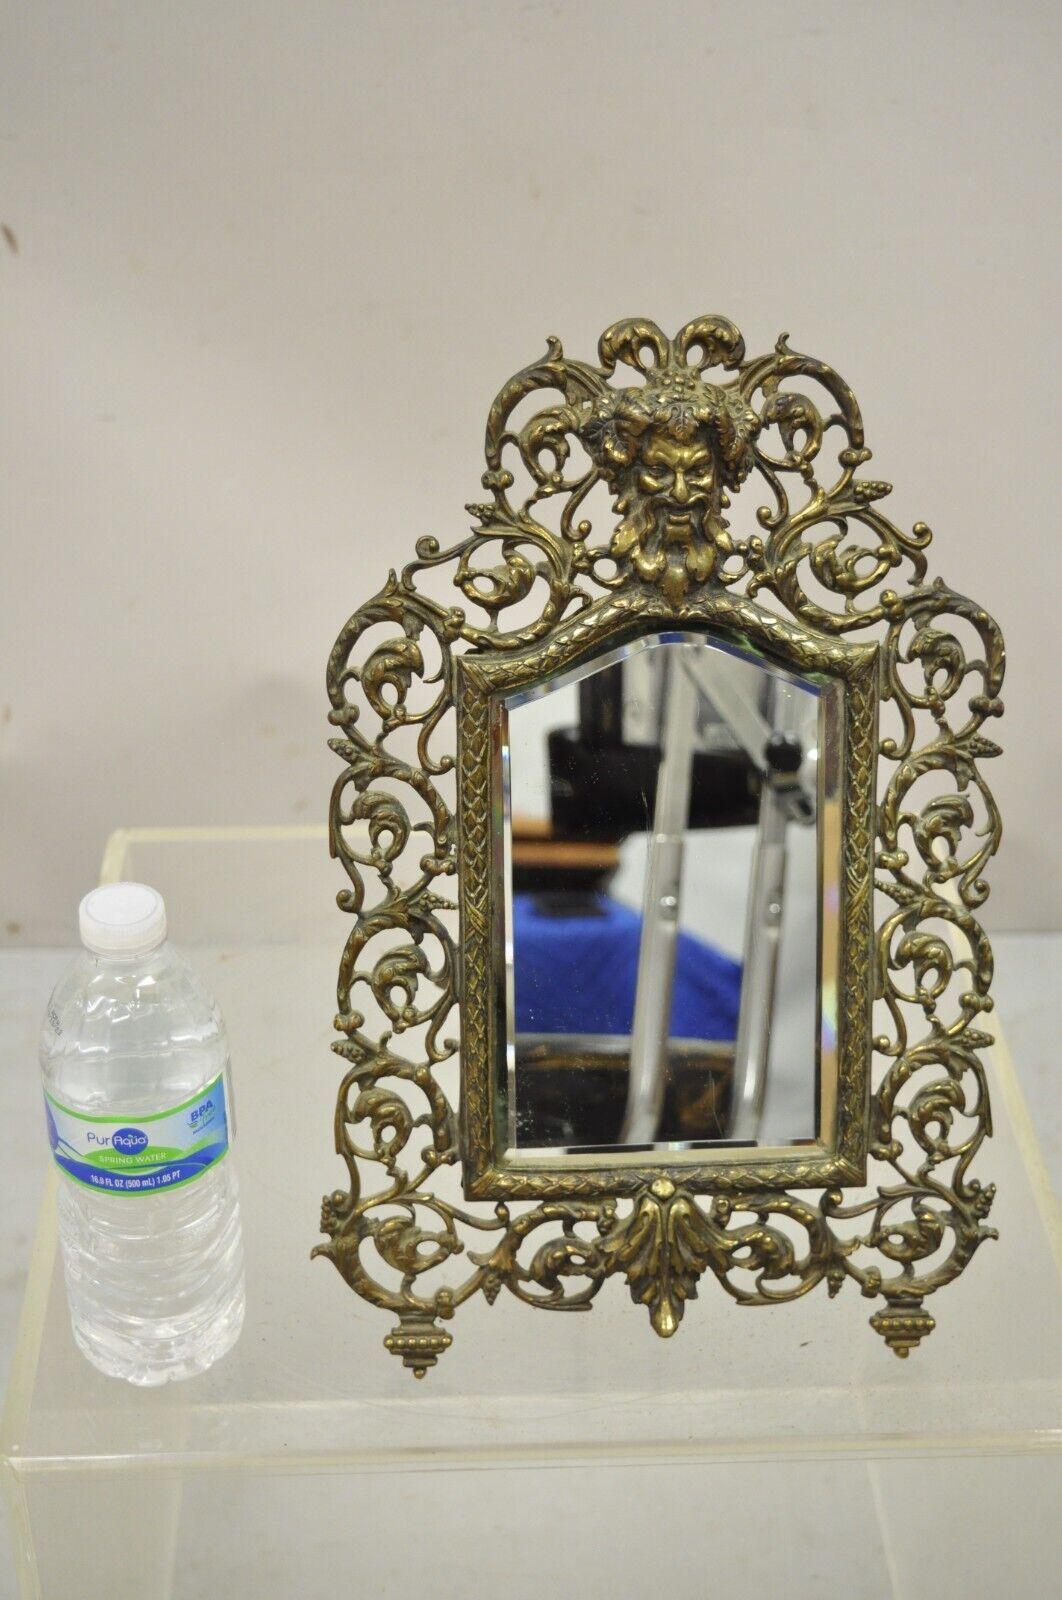 Vieux miroir de courtoisie en laiton français, petit miroir de rasage en verre biseauté avec visage de bacchus. L'article est doté d'un cadre en laiton orné du visage de Bacchus et de volutes feuillues percées, d'un miroir en verre biseauté et d'un